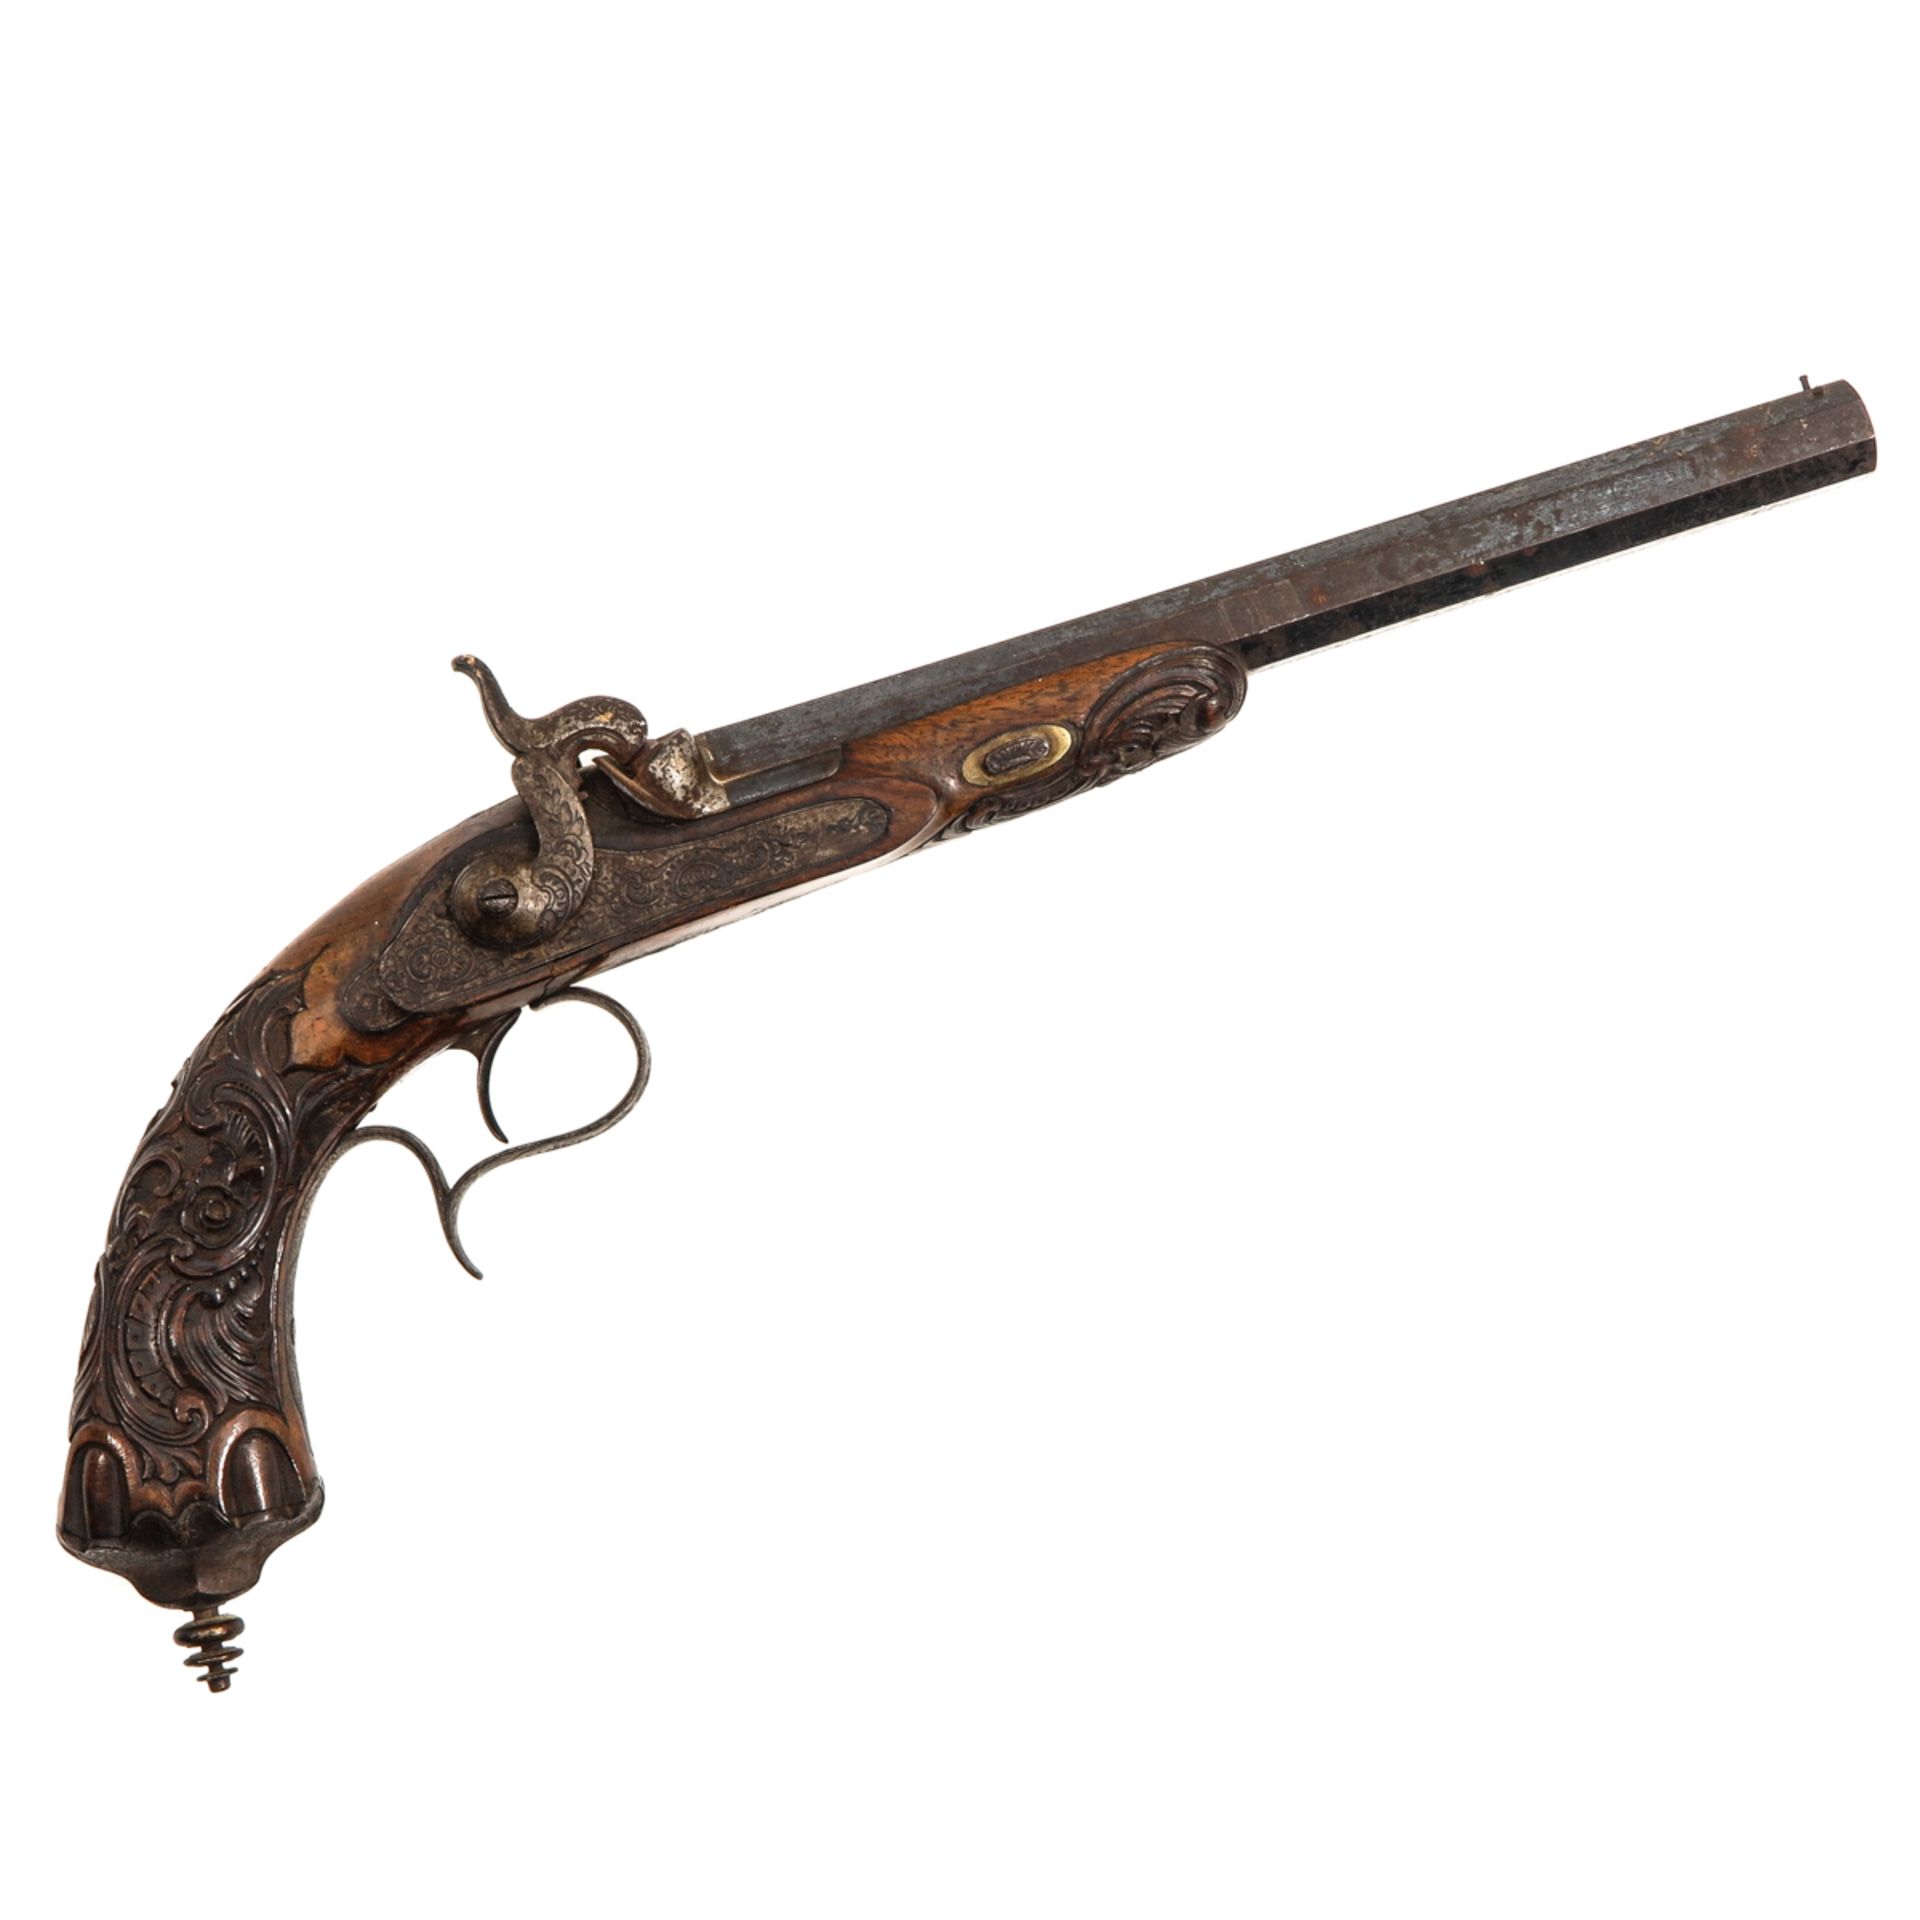 An Antique Pistol